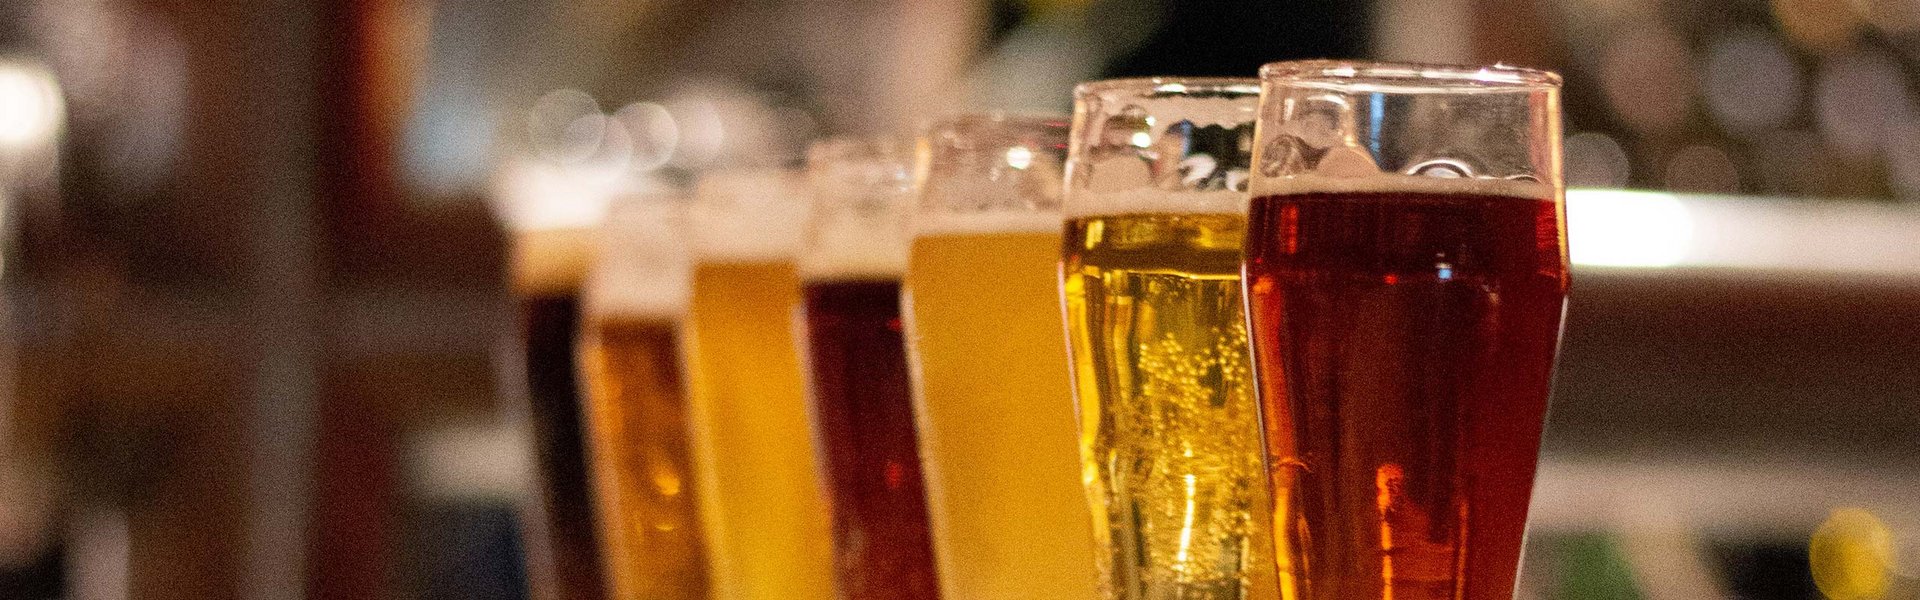 Internationale Biere in Dortmund kaufen bei Getränke Rudat